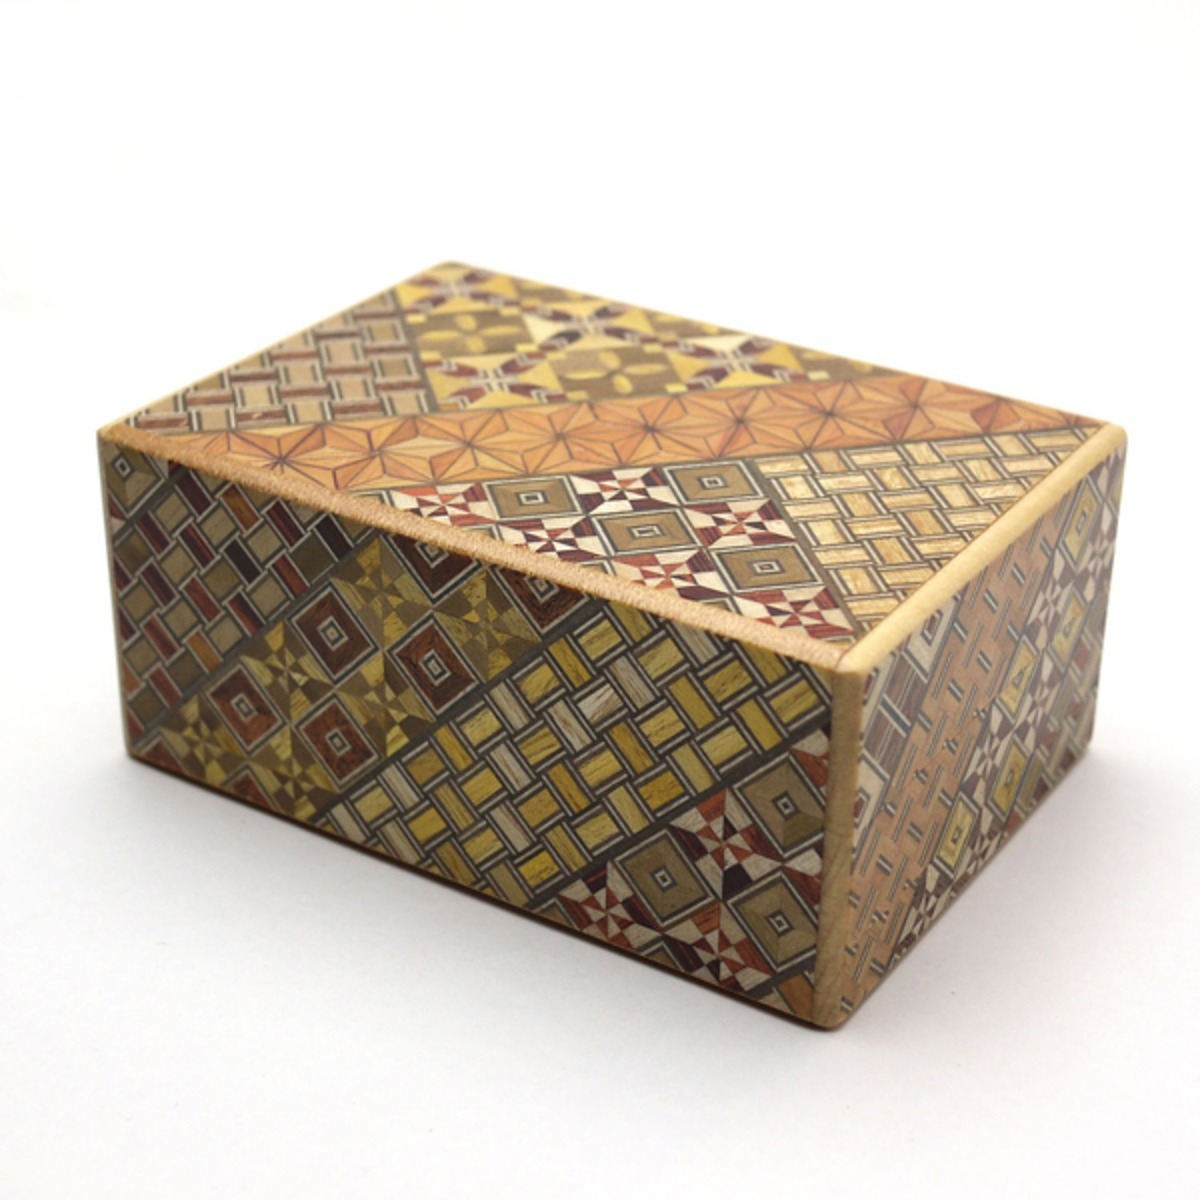 仕掛けで開くからくり箱 箱根寄木 秘密箱 4寸サイズ 10回仕掛け 細工箱 日本製の伝統工芸品 Yosegi Magic Box - スマートギフト